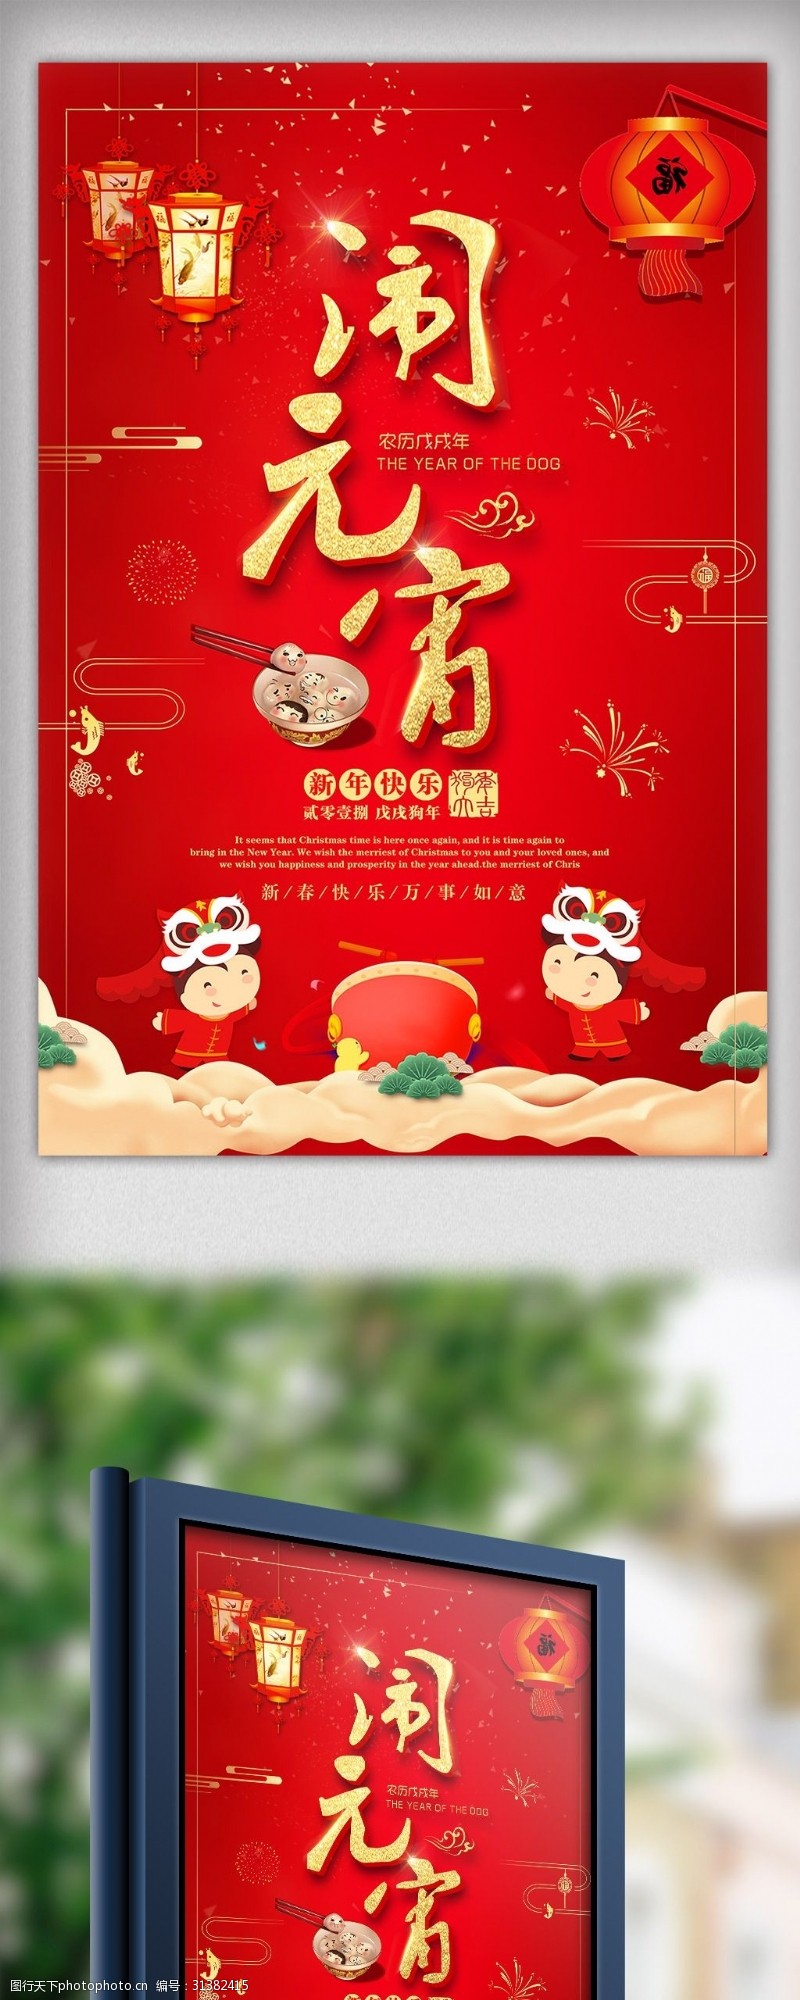 狗年春联2018闹元宵狗年新春元宵节节日宣传海报